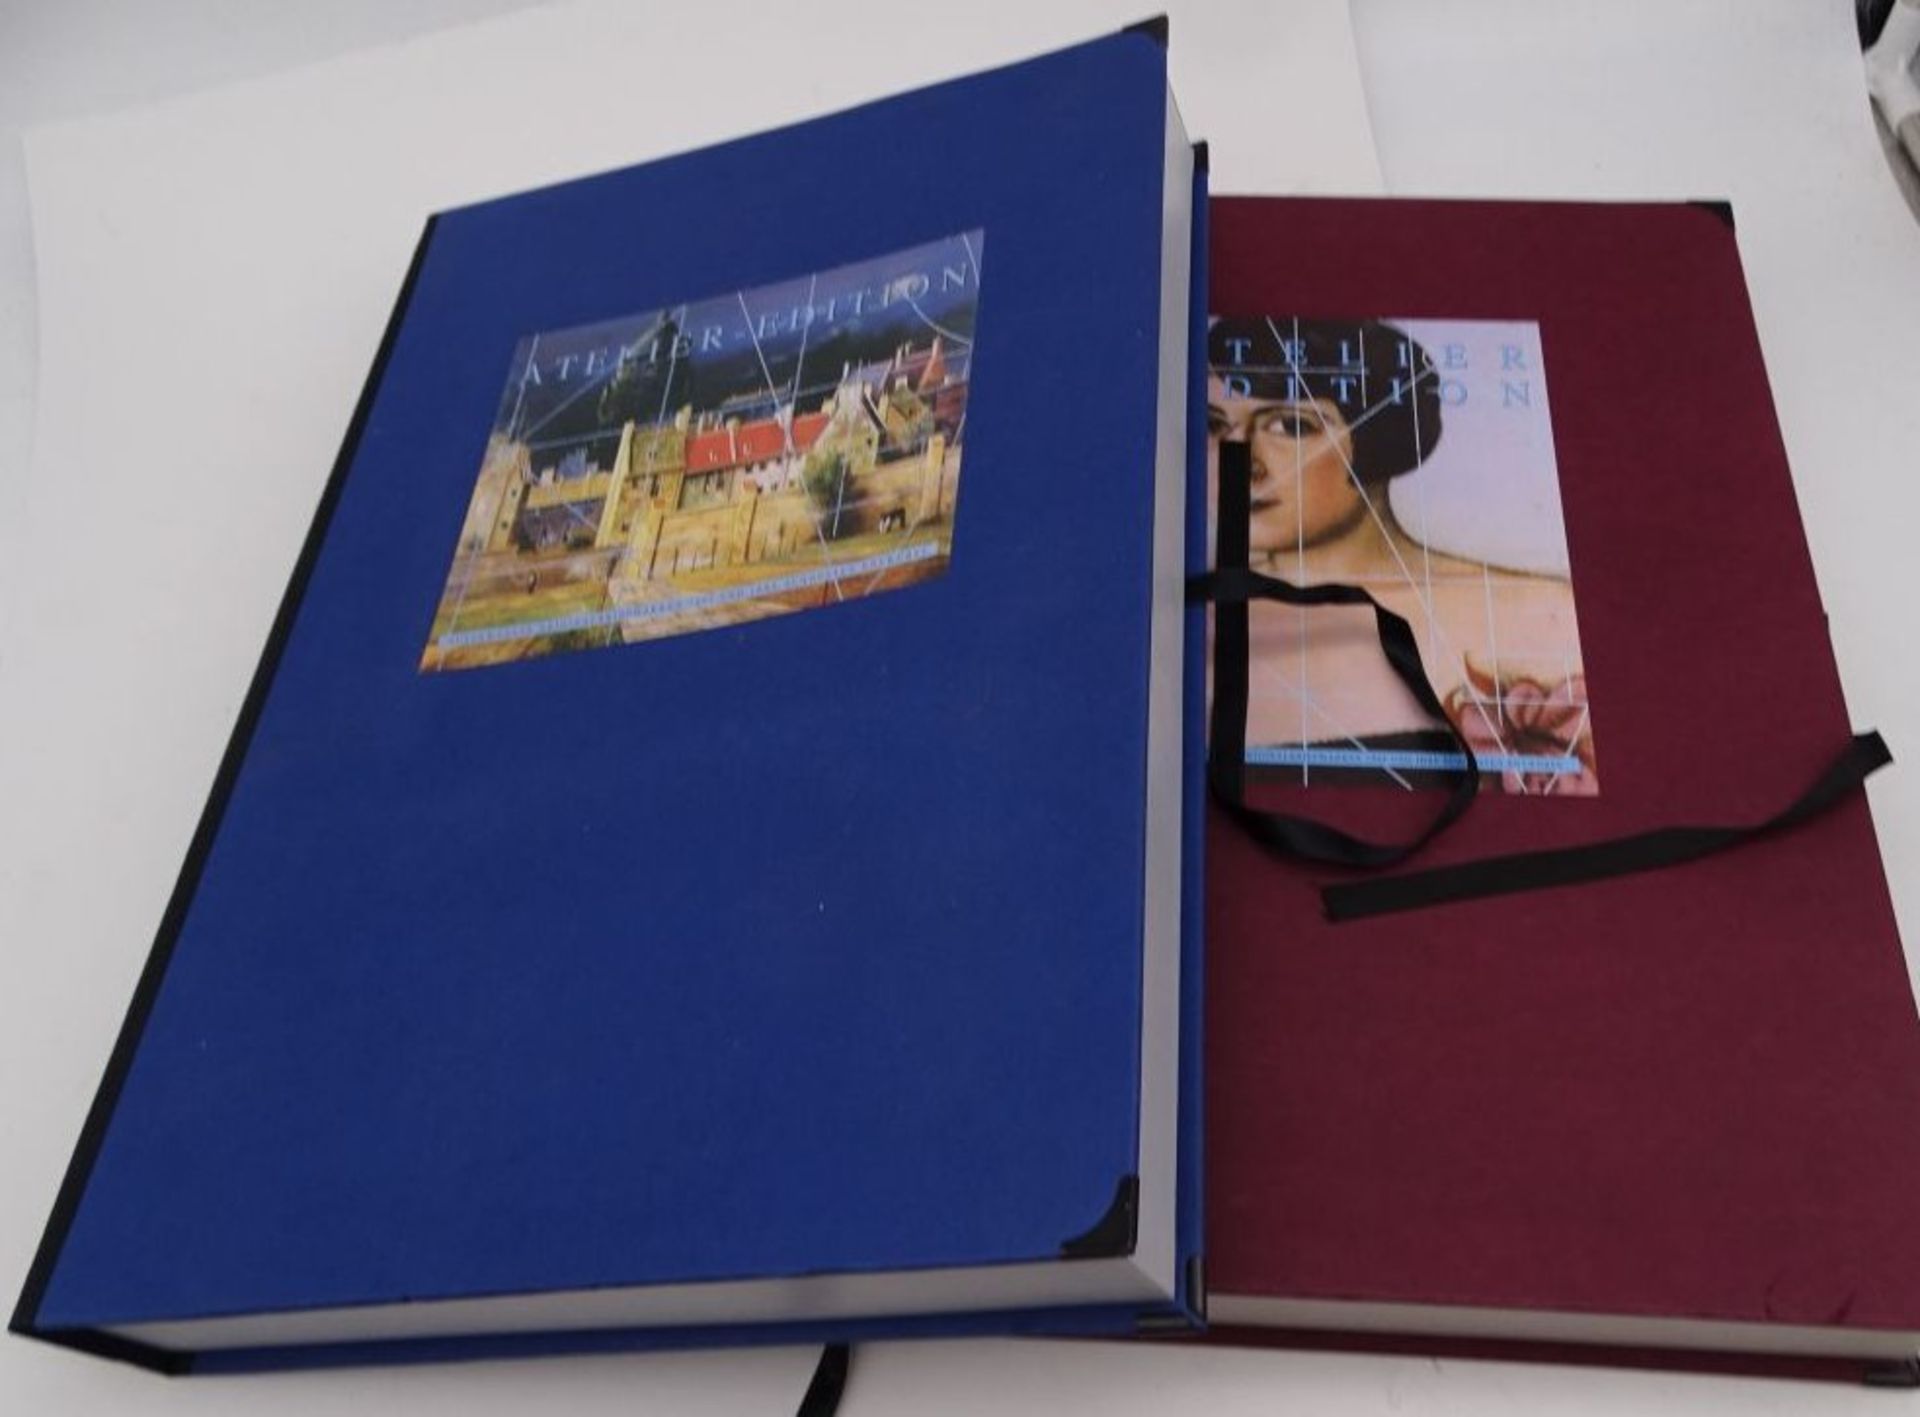 2 Grossbände Briefmarken Bund Atelier-Edition, 1995 und 1994,komplett. limitierte Auflagen - Image 2 of 11